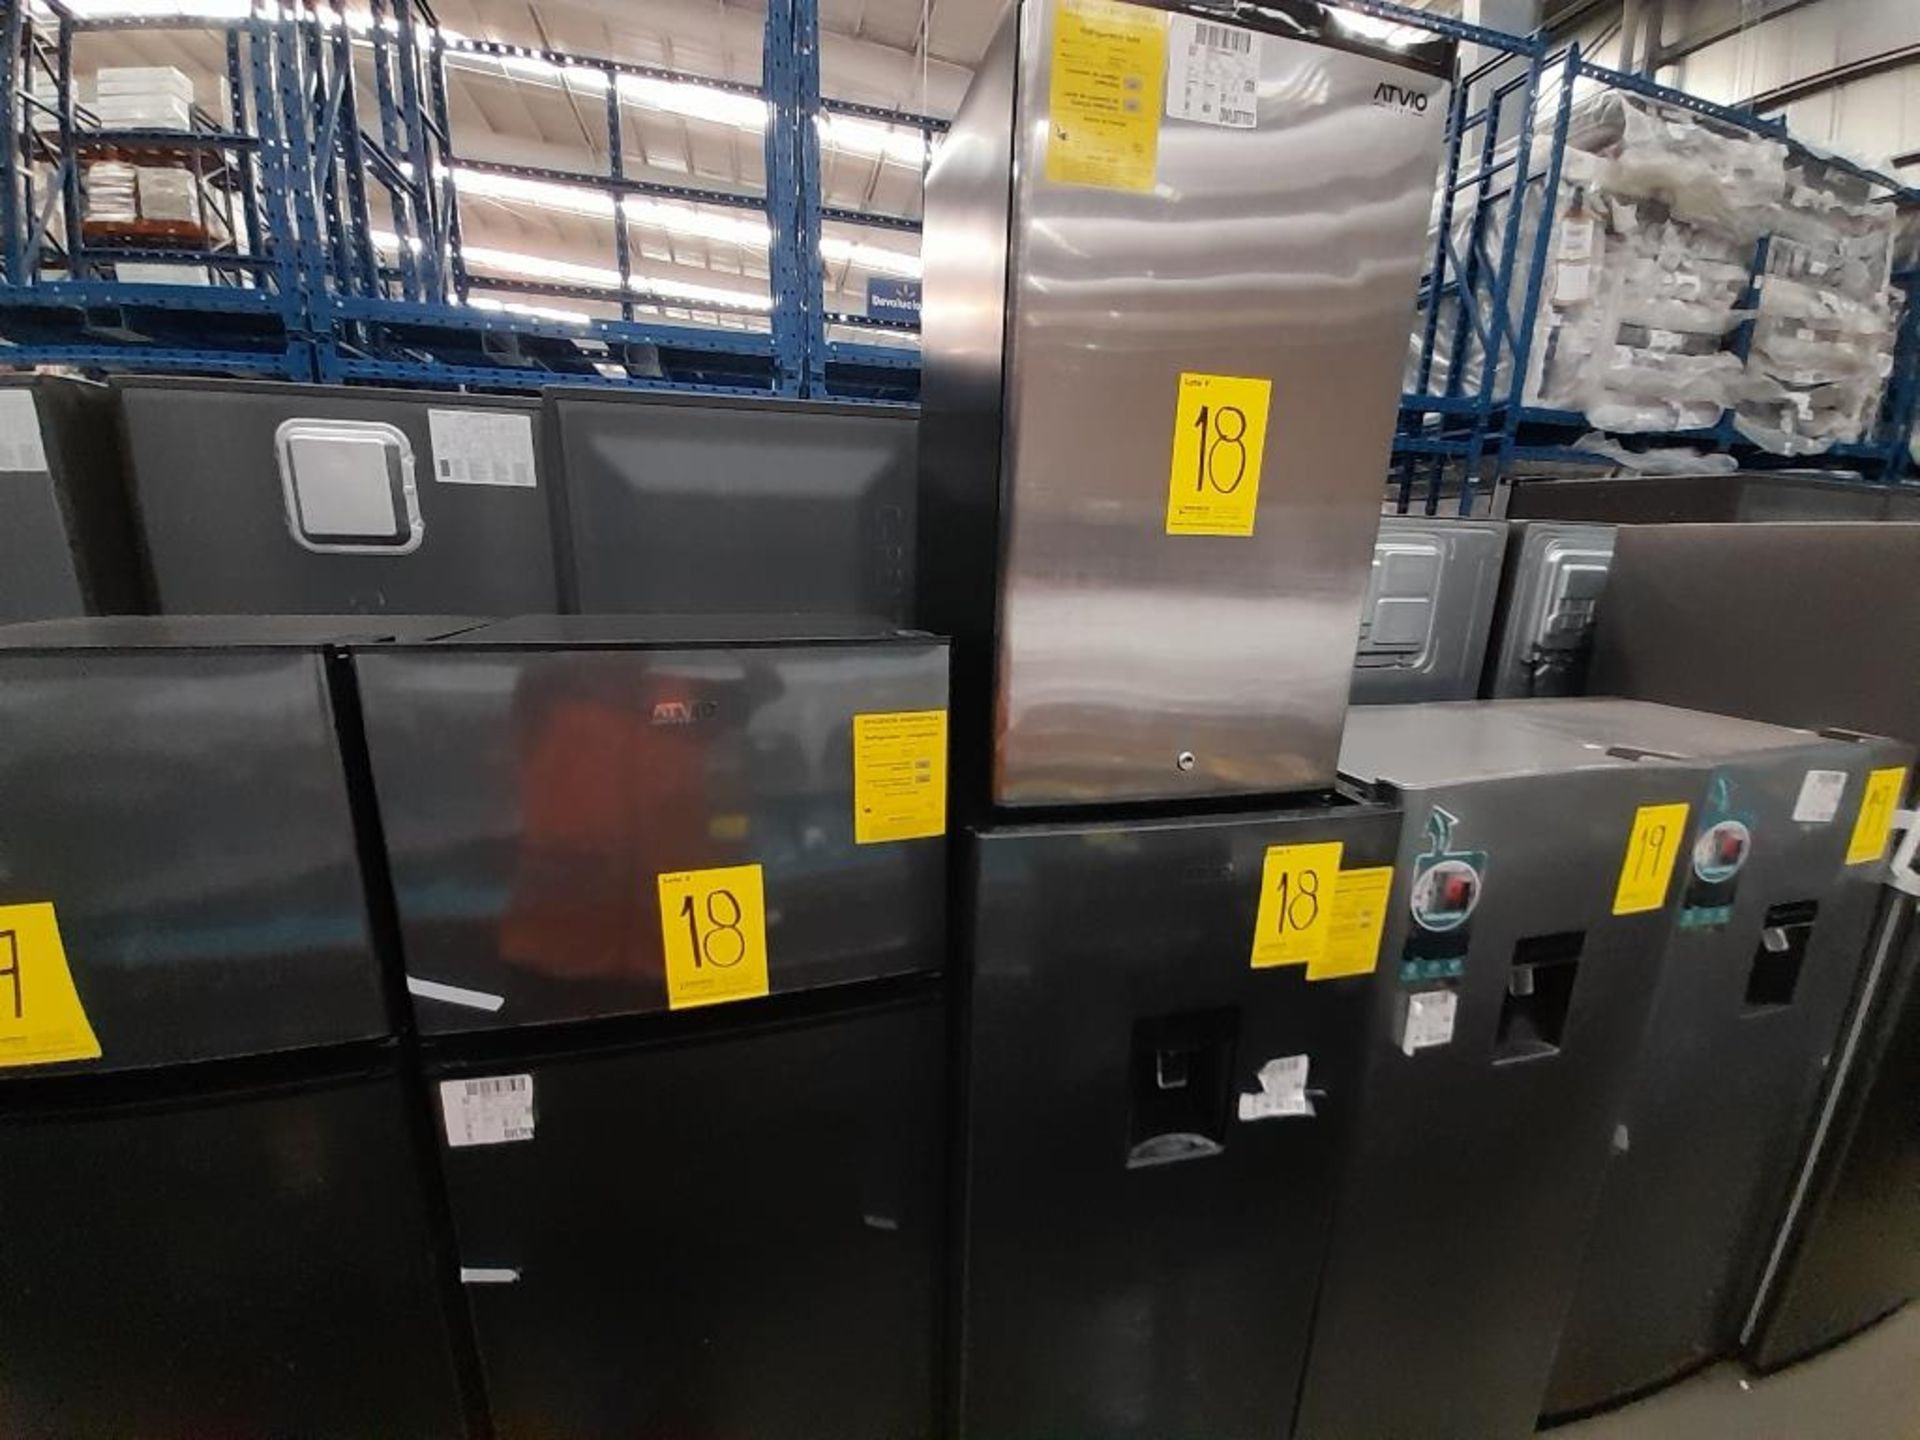 Lote de 3 refrigeradores Contiene: 1 Refrigerador Marca ATVIO, Modelo AT73TMS, Serie ND, Color GRIS